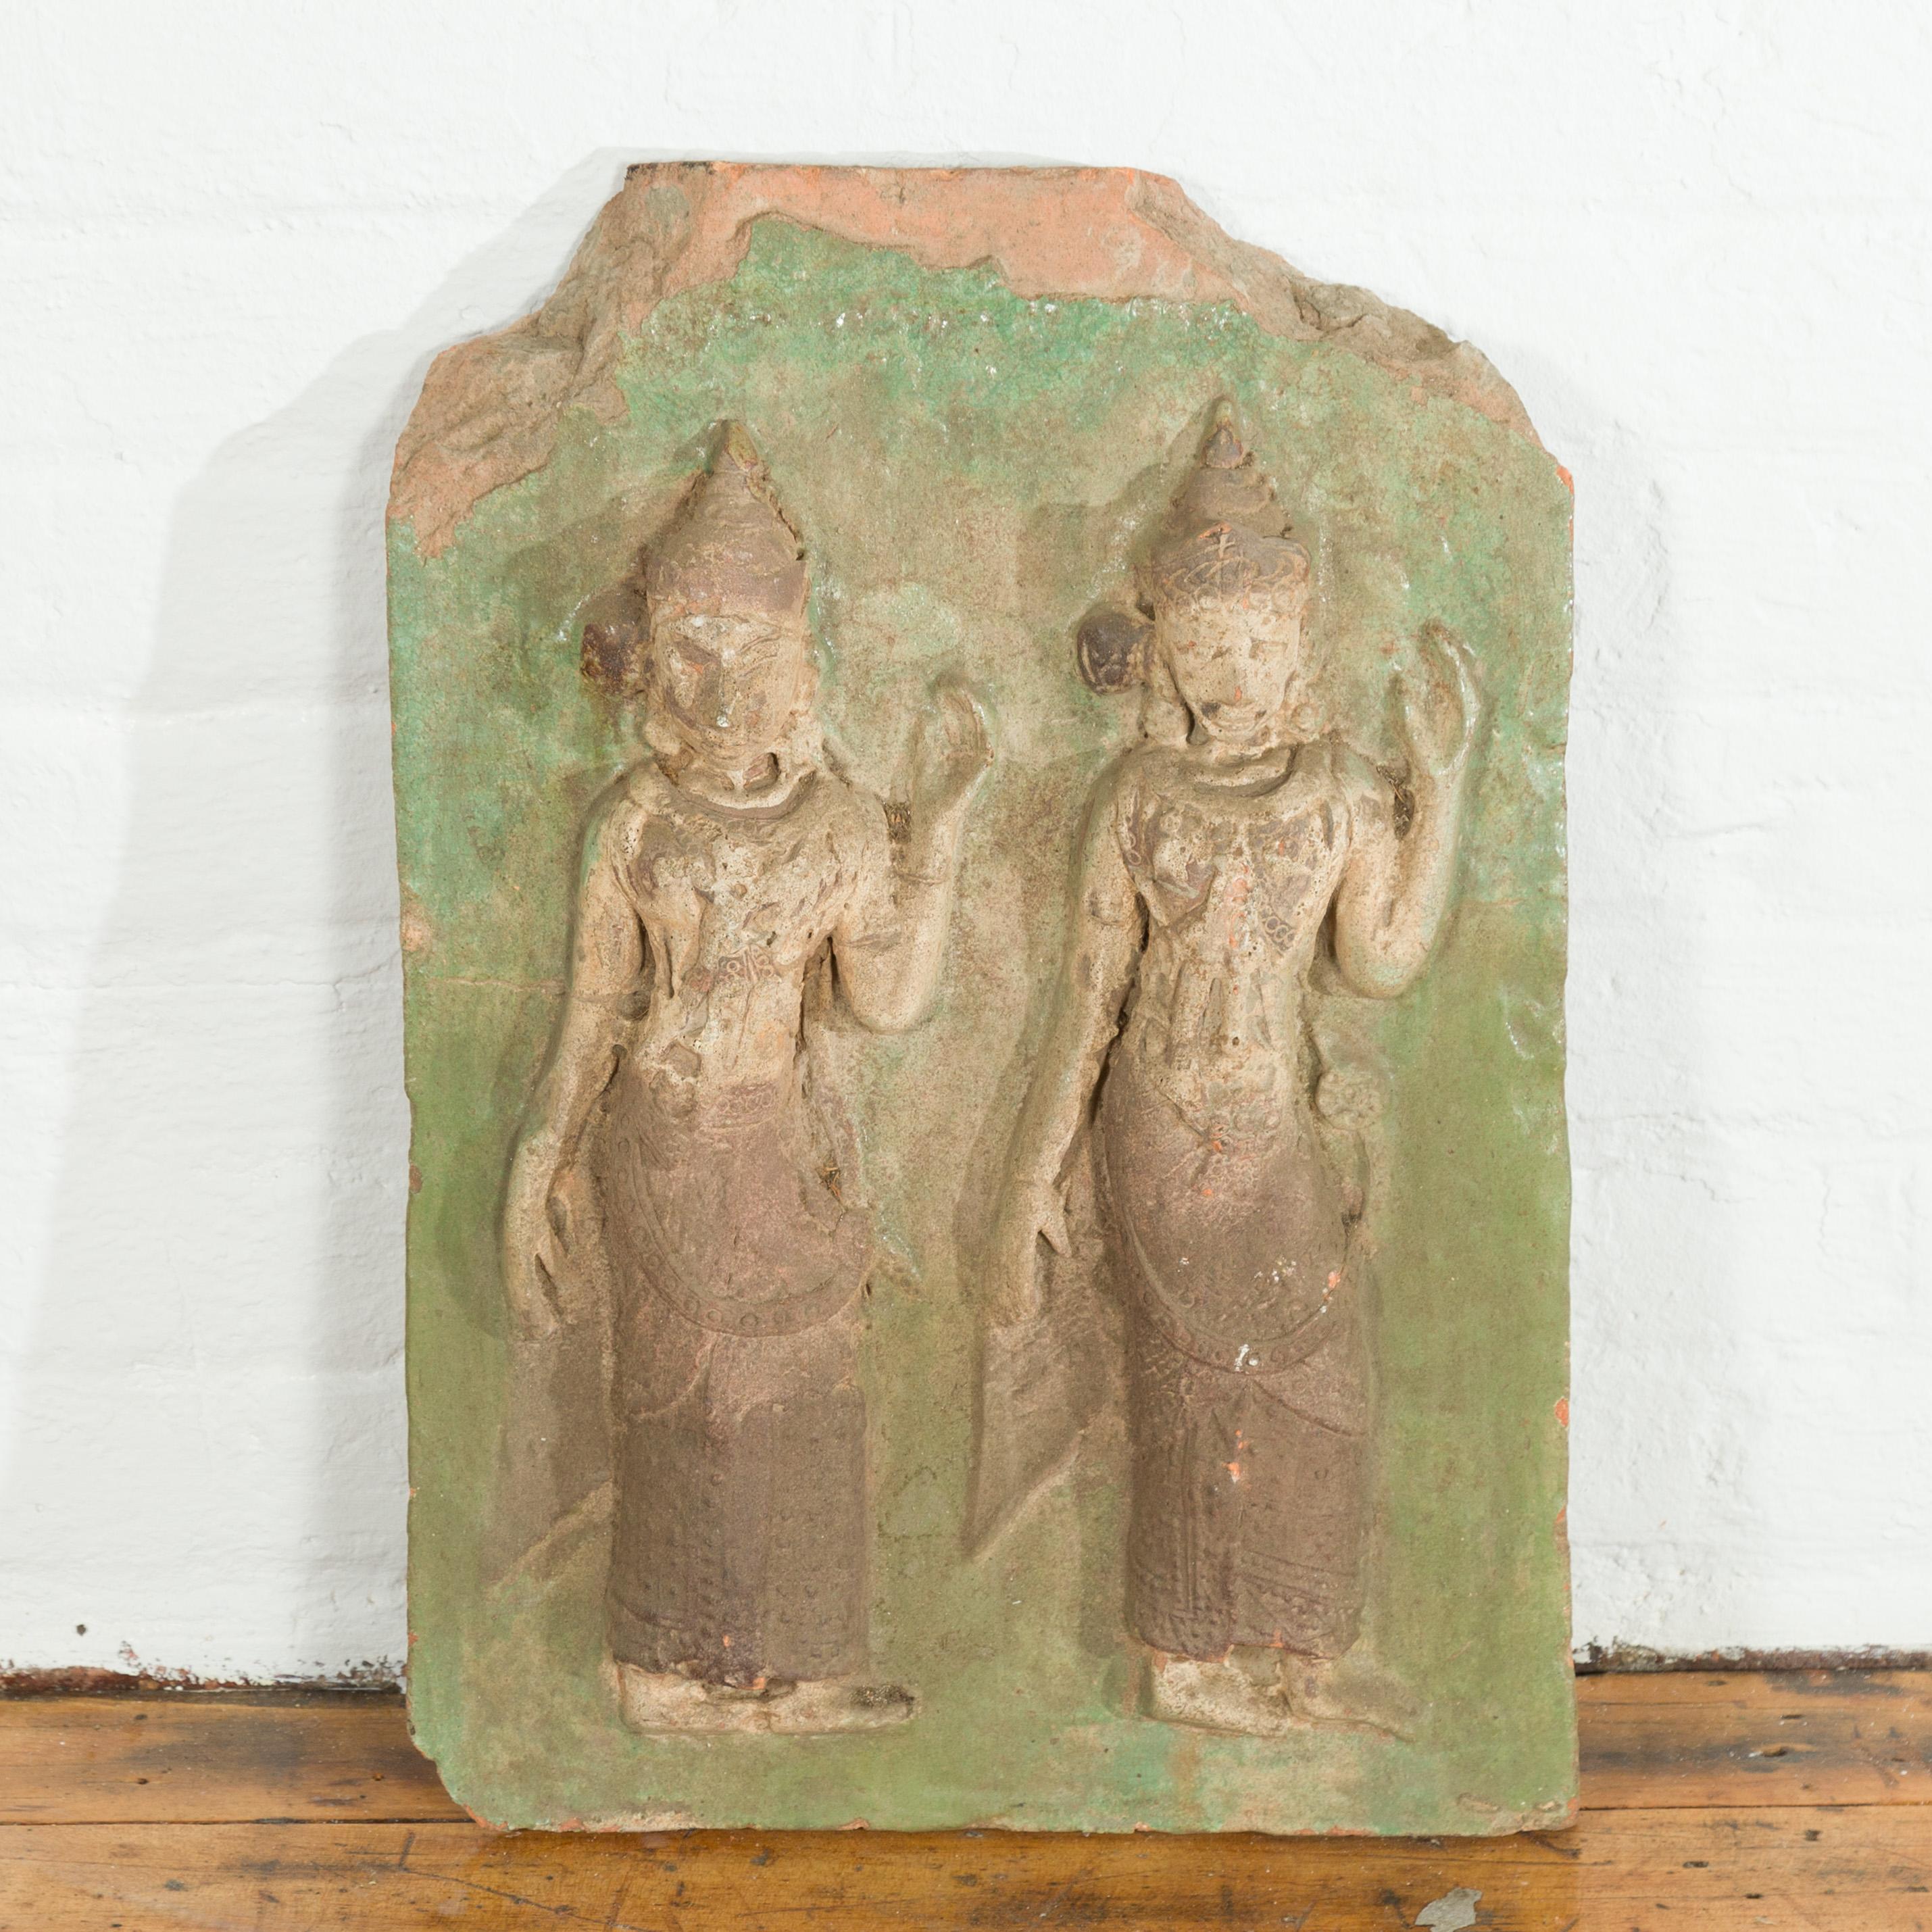 Plaque murale de temple en pierre sculptée en Thaïlande représentant deux danseurs de cérémonie avec des accents verts. Sculptée à la main en Thaïlande, cette plaque murale ancienne représente deux danseurs de cérémonie avec de hautes coiffes et de